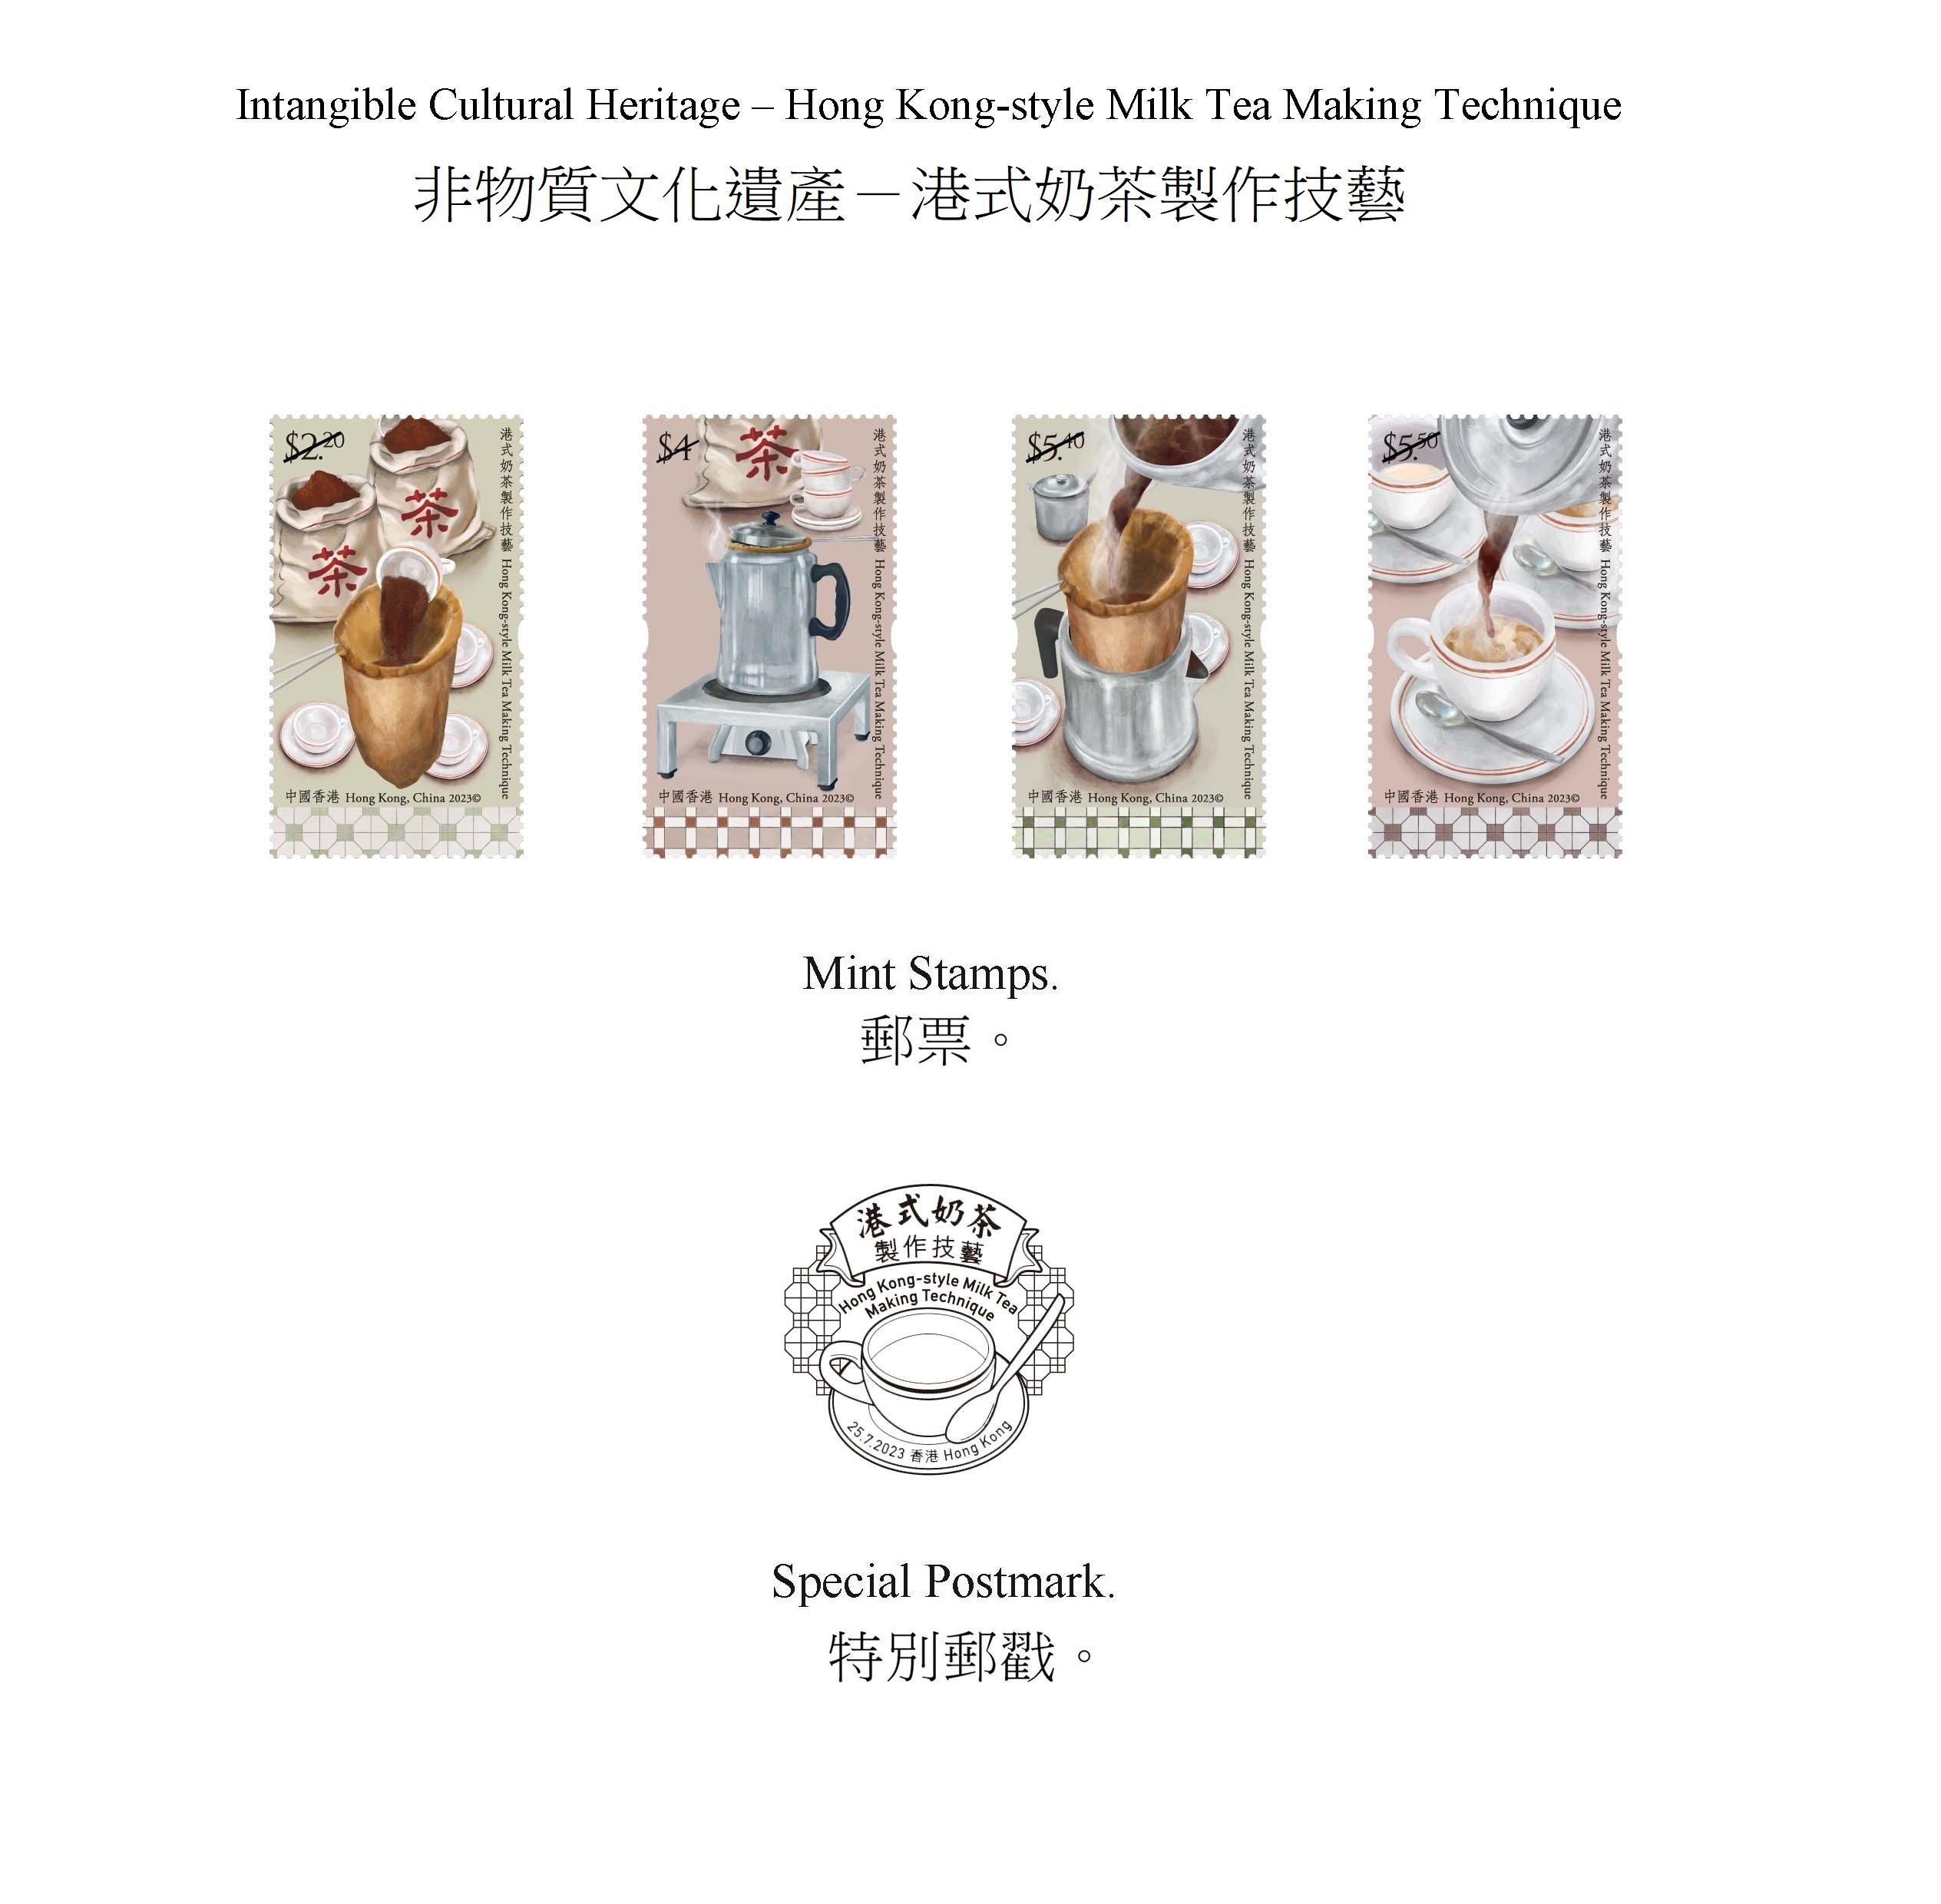 香港郵政七月二十五日（星期二）發行以「非物質文化遺產——港式奶茶製作技藝」為題的特別郵票及相關集郵品。圖示郵票和特別郵戳。